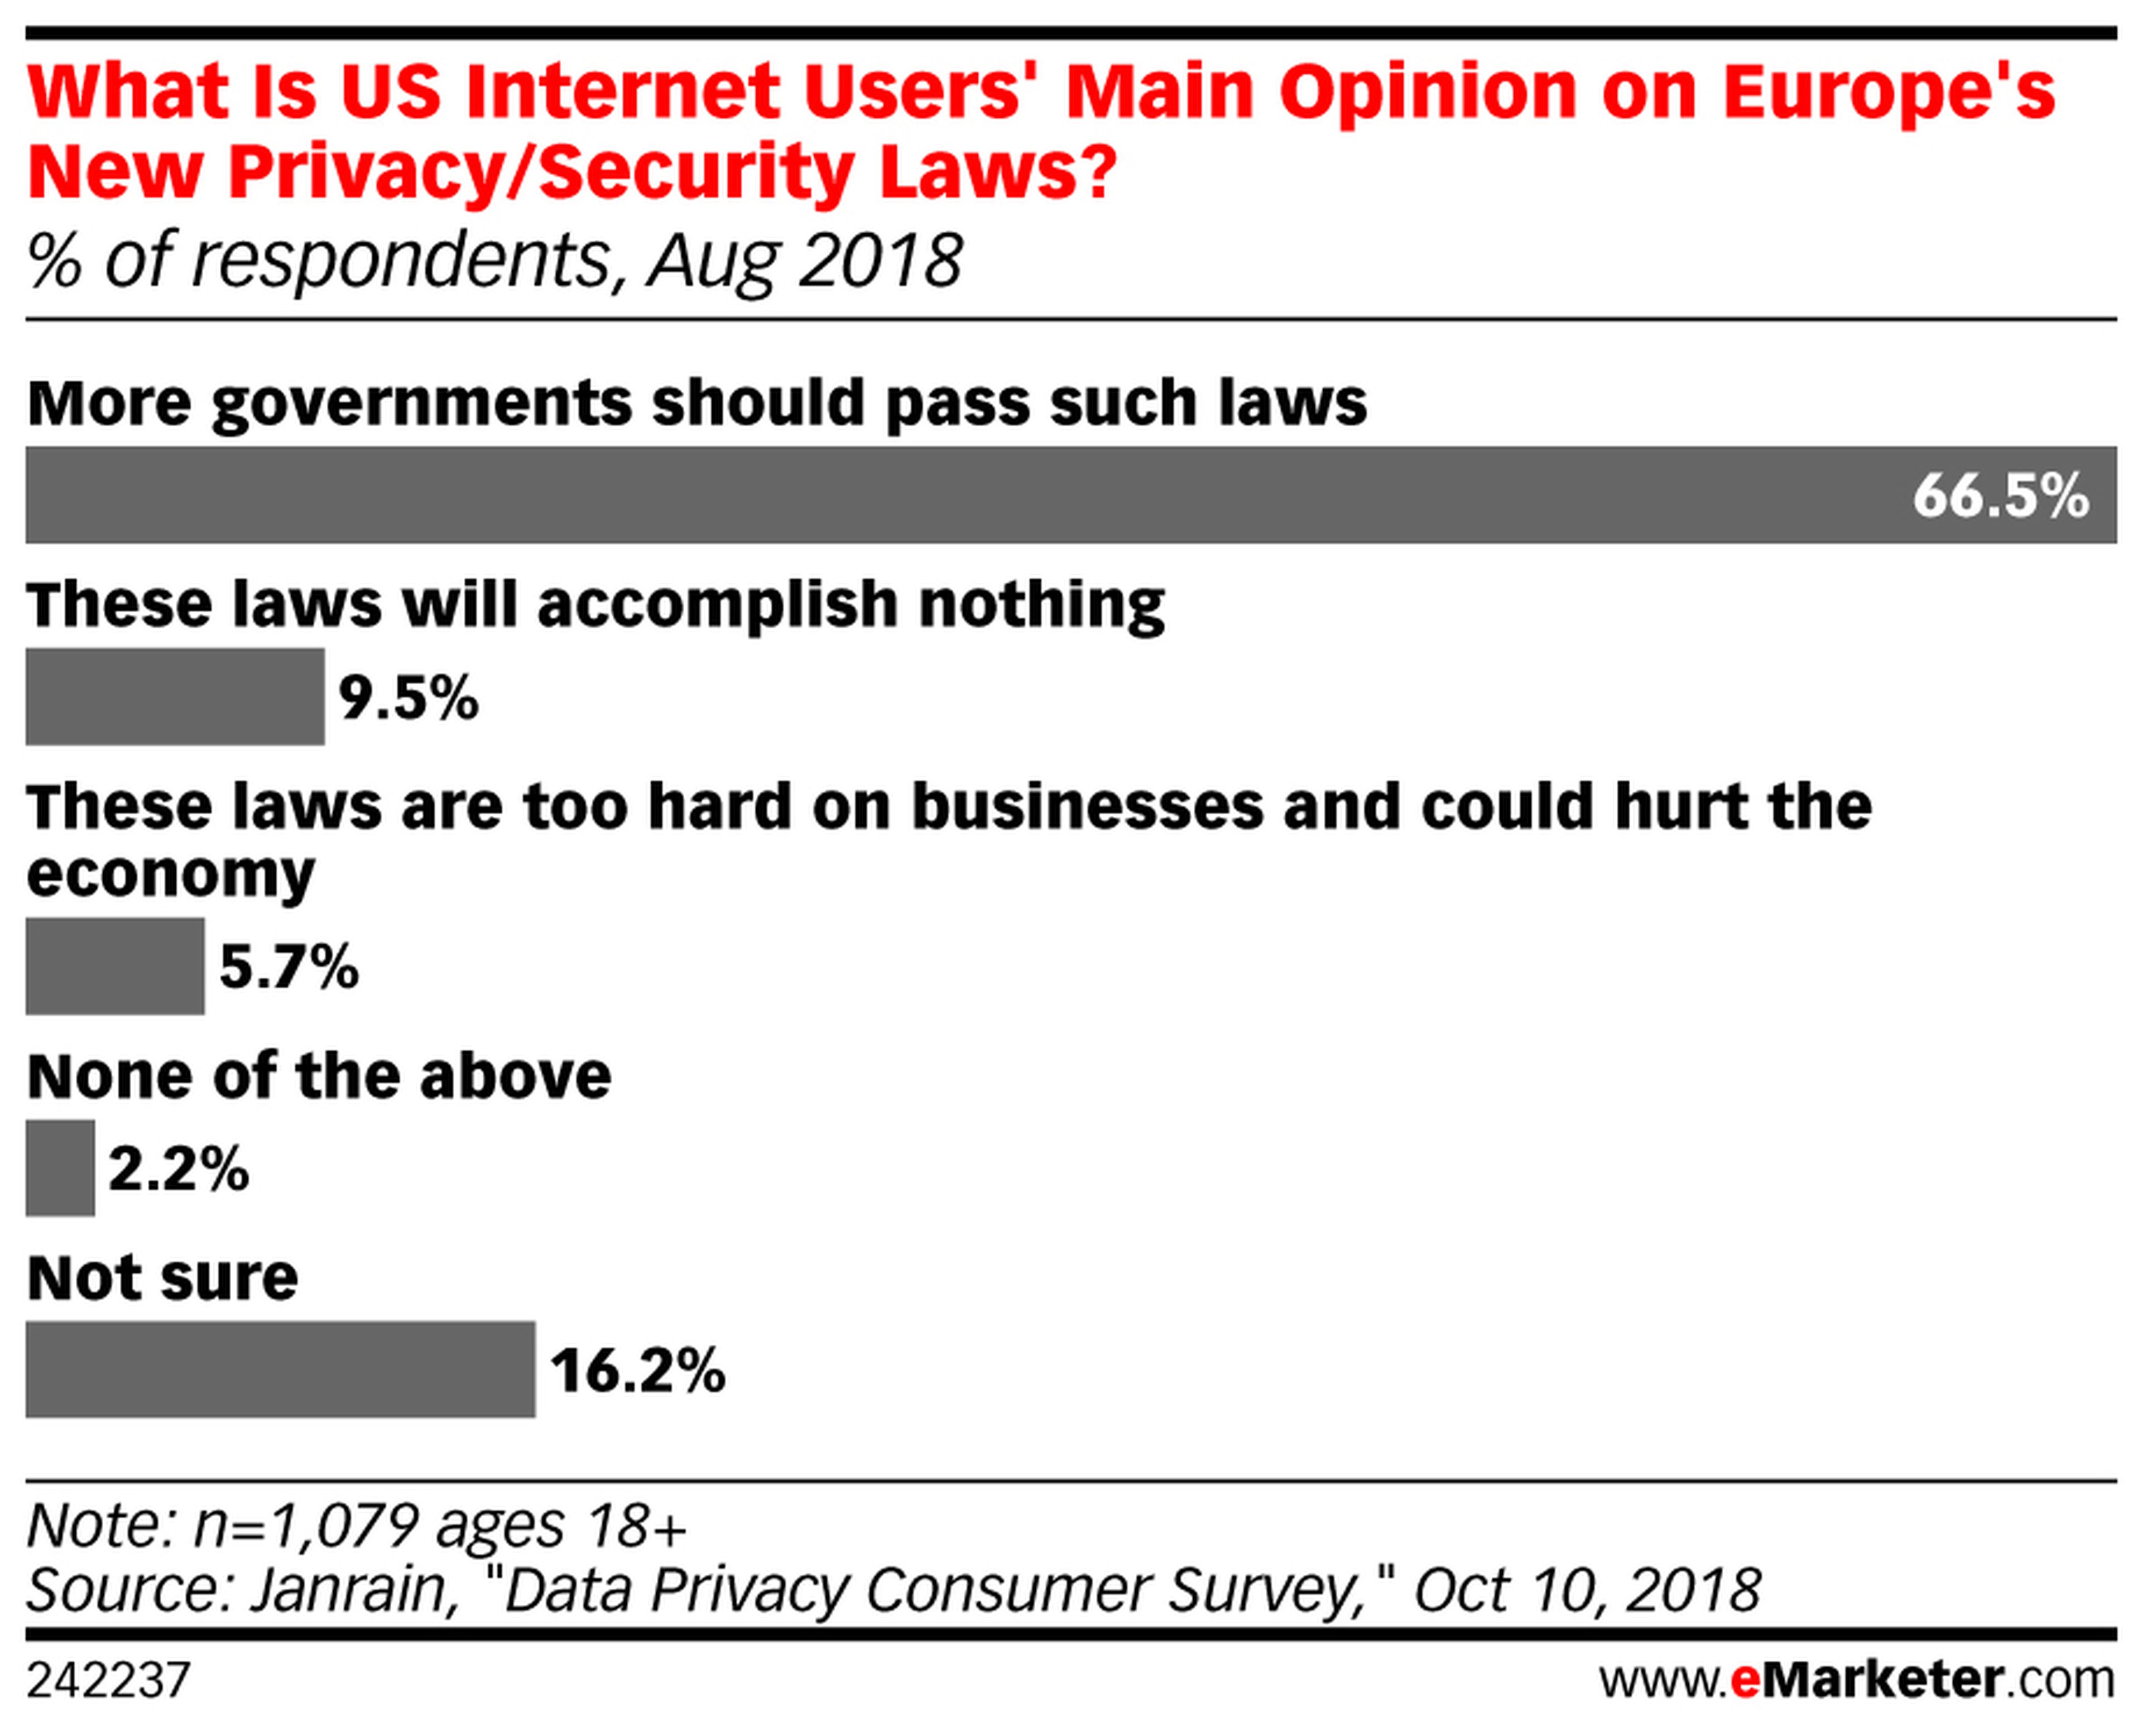 ¿Qué opinan los internautas estadounidenses de las nuevas leyes sobre privacidad europeas?